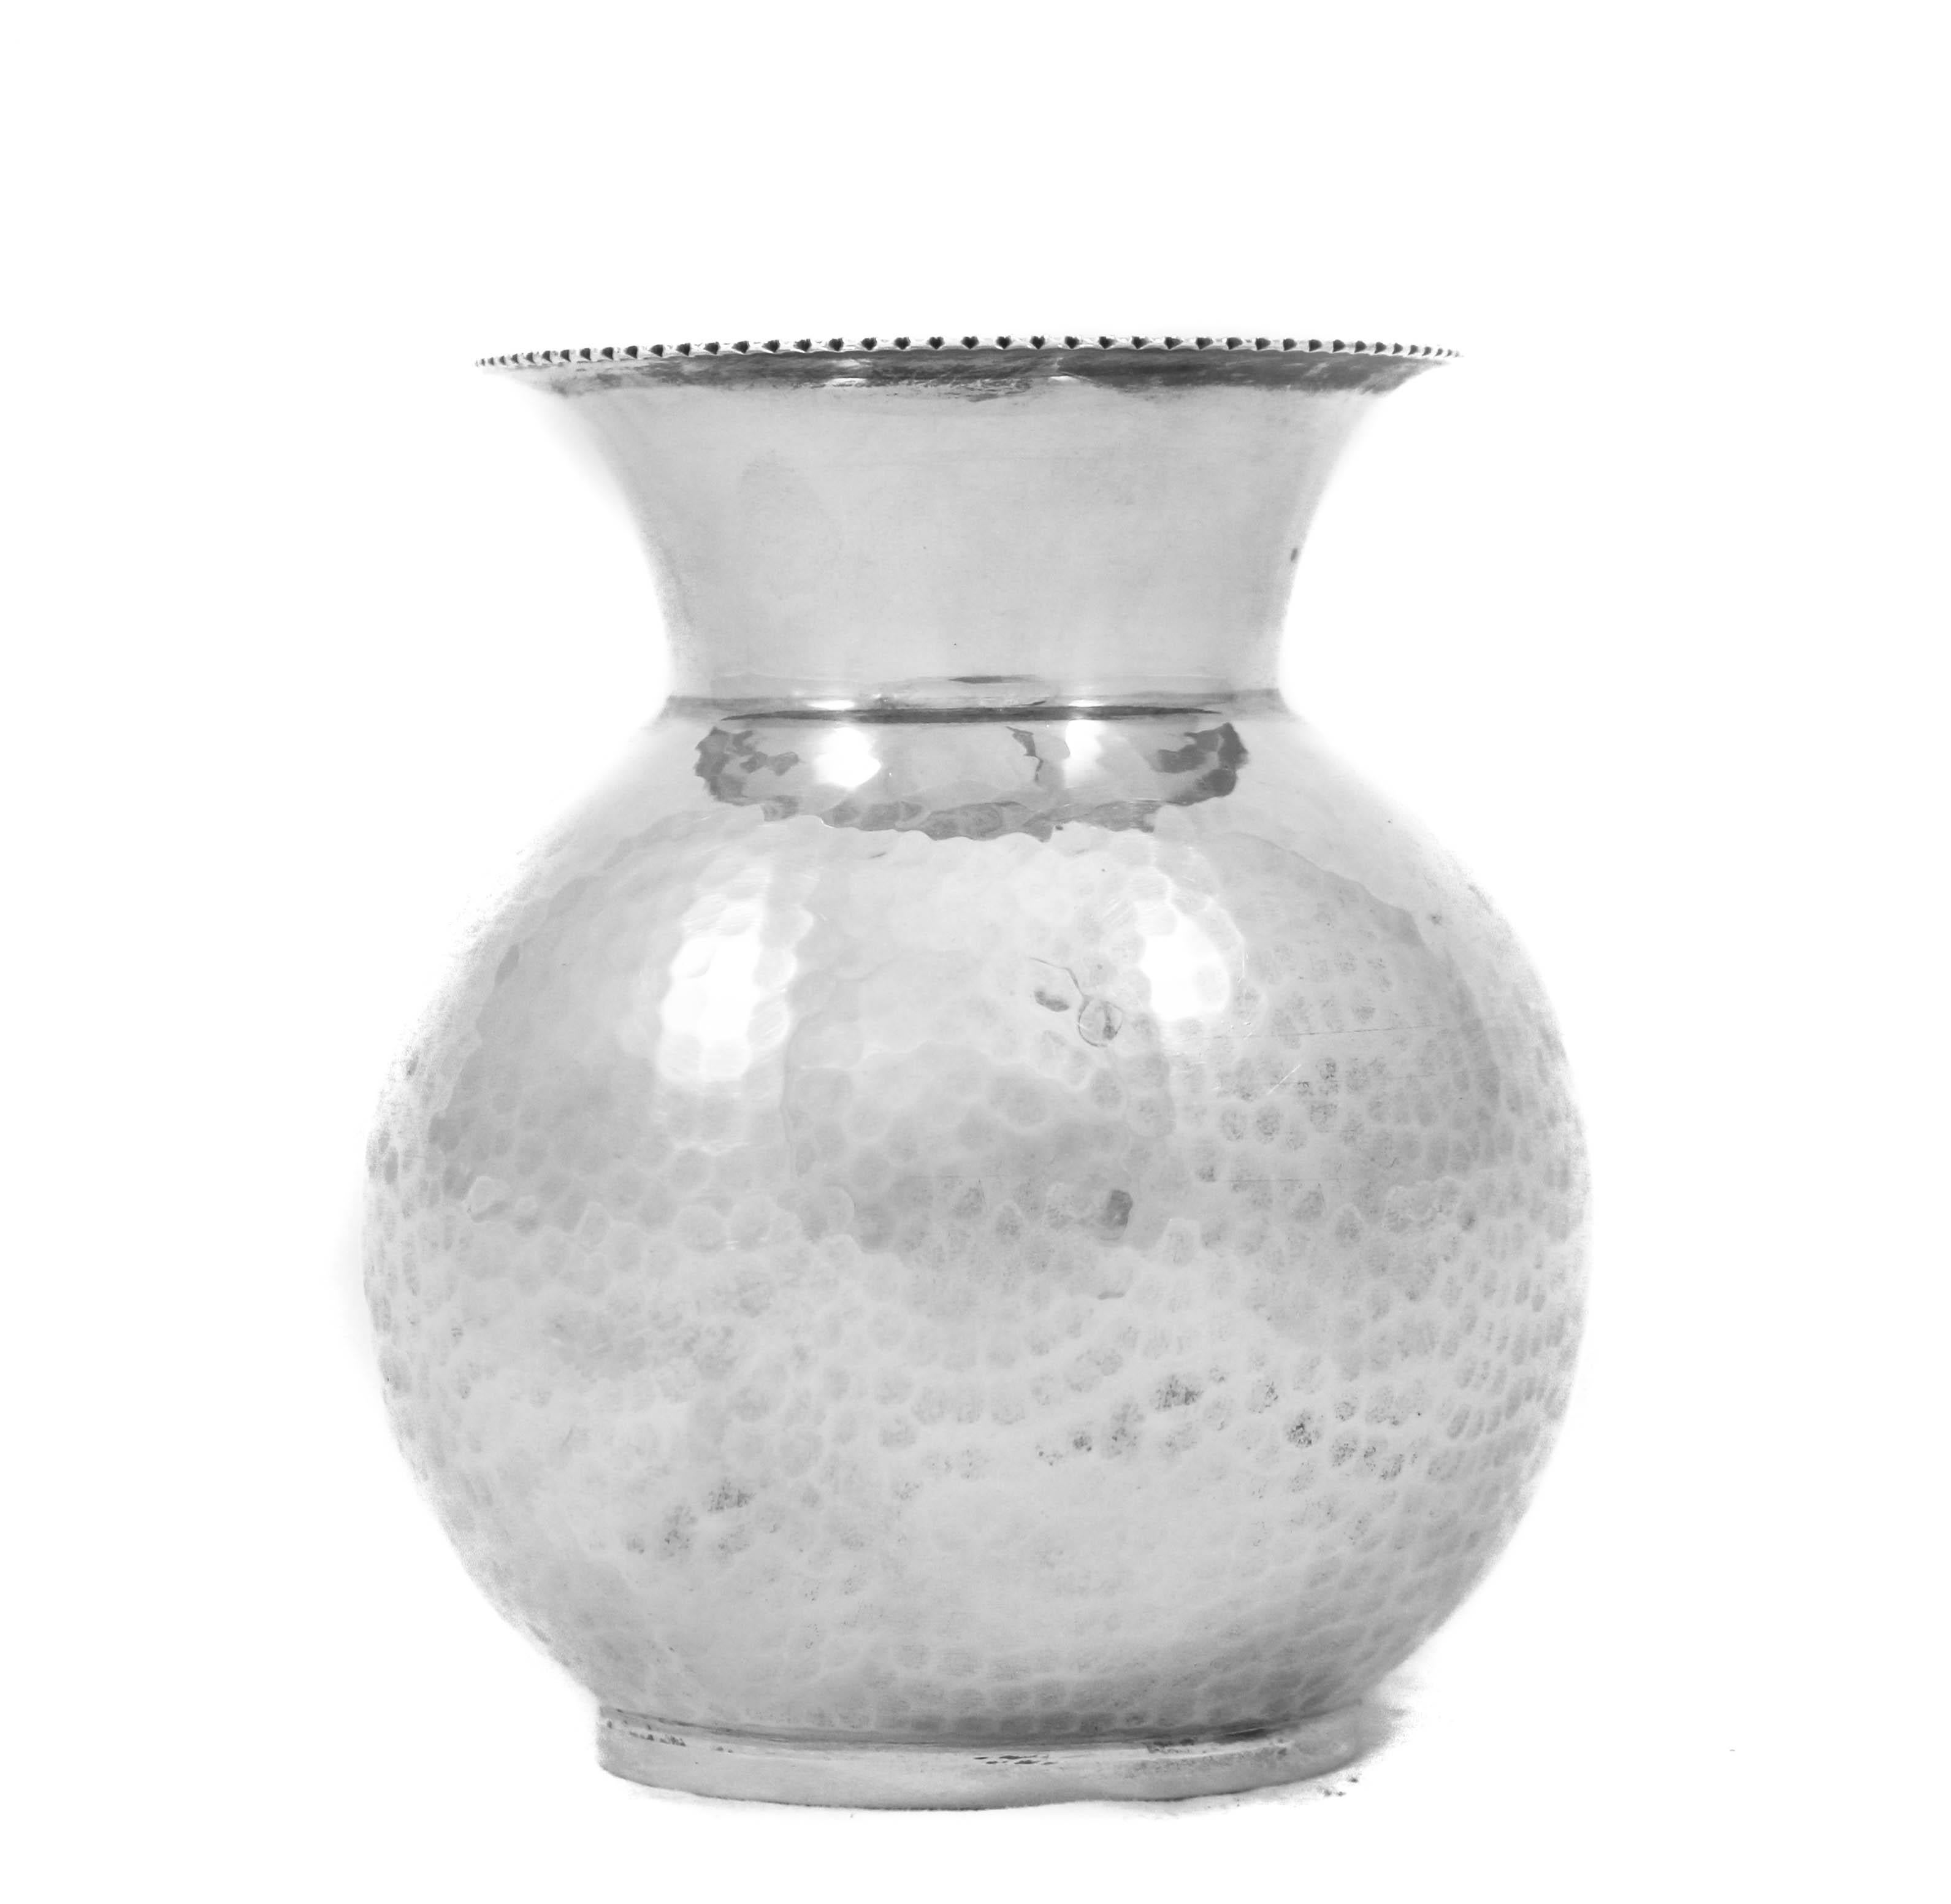 Wir freuen uns, Ihnen diese handgehämmerte Vase aus Sterlingsilber anbieten zu können, die in den 1960er Jahren in Italien hergestellt wurde.
Sie hat einen rundlichen Körper und einen konischen Hals. Das perfekte Akzentstück für ein Puderzimmer,